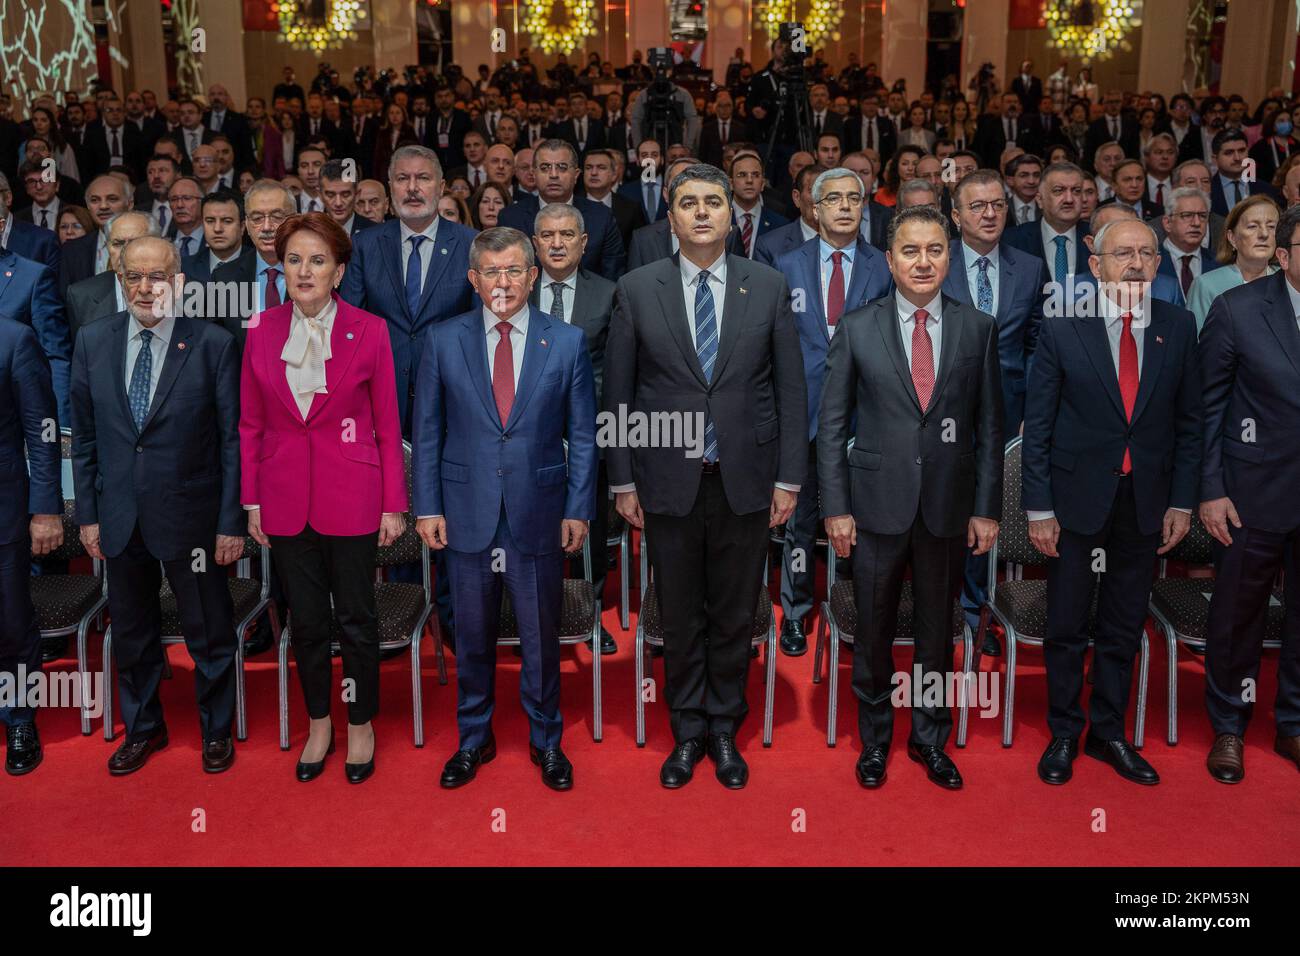 Führer der Republikanischen Volkspartei (CHP) Kemal Kilicdaroglu (2. R), IYI Partei Meral Aksener (4. L), Felicity Party (Saadet) Temel Karamollaoglu (3. L), Demokratische Partei (DP) Gultekin Uysal (4. R), Future Party (Gelecek) Ahmet Davutoglu (5. L), Und Demokratie und Fortschritt (DEVA), Ali Babacan (3. R), nehmen an der Einführungstagung zum Vorschlag zur Verfassungsänderung des gestärkten Parlamentssystems Teil. Vorsitzender der Republikanischen Volkspartei (KHP) Kemal K?l?codaro?lu, VORSITZENDER DER IYI-Partei Meral AK?ener, Vorsitzender der Felicity-Partei (SP) Temel Karamollao?lu, Vorsitzender der Demokratischen Partei (DP) Stockfoto